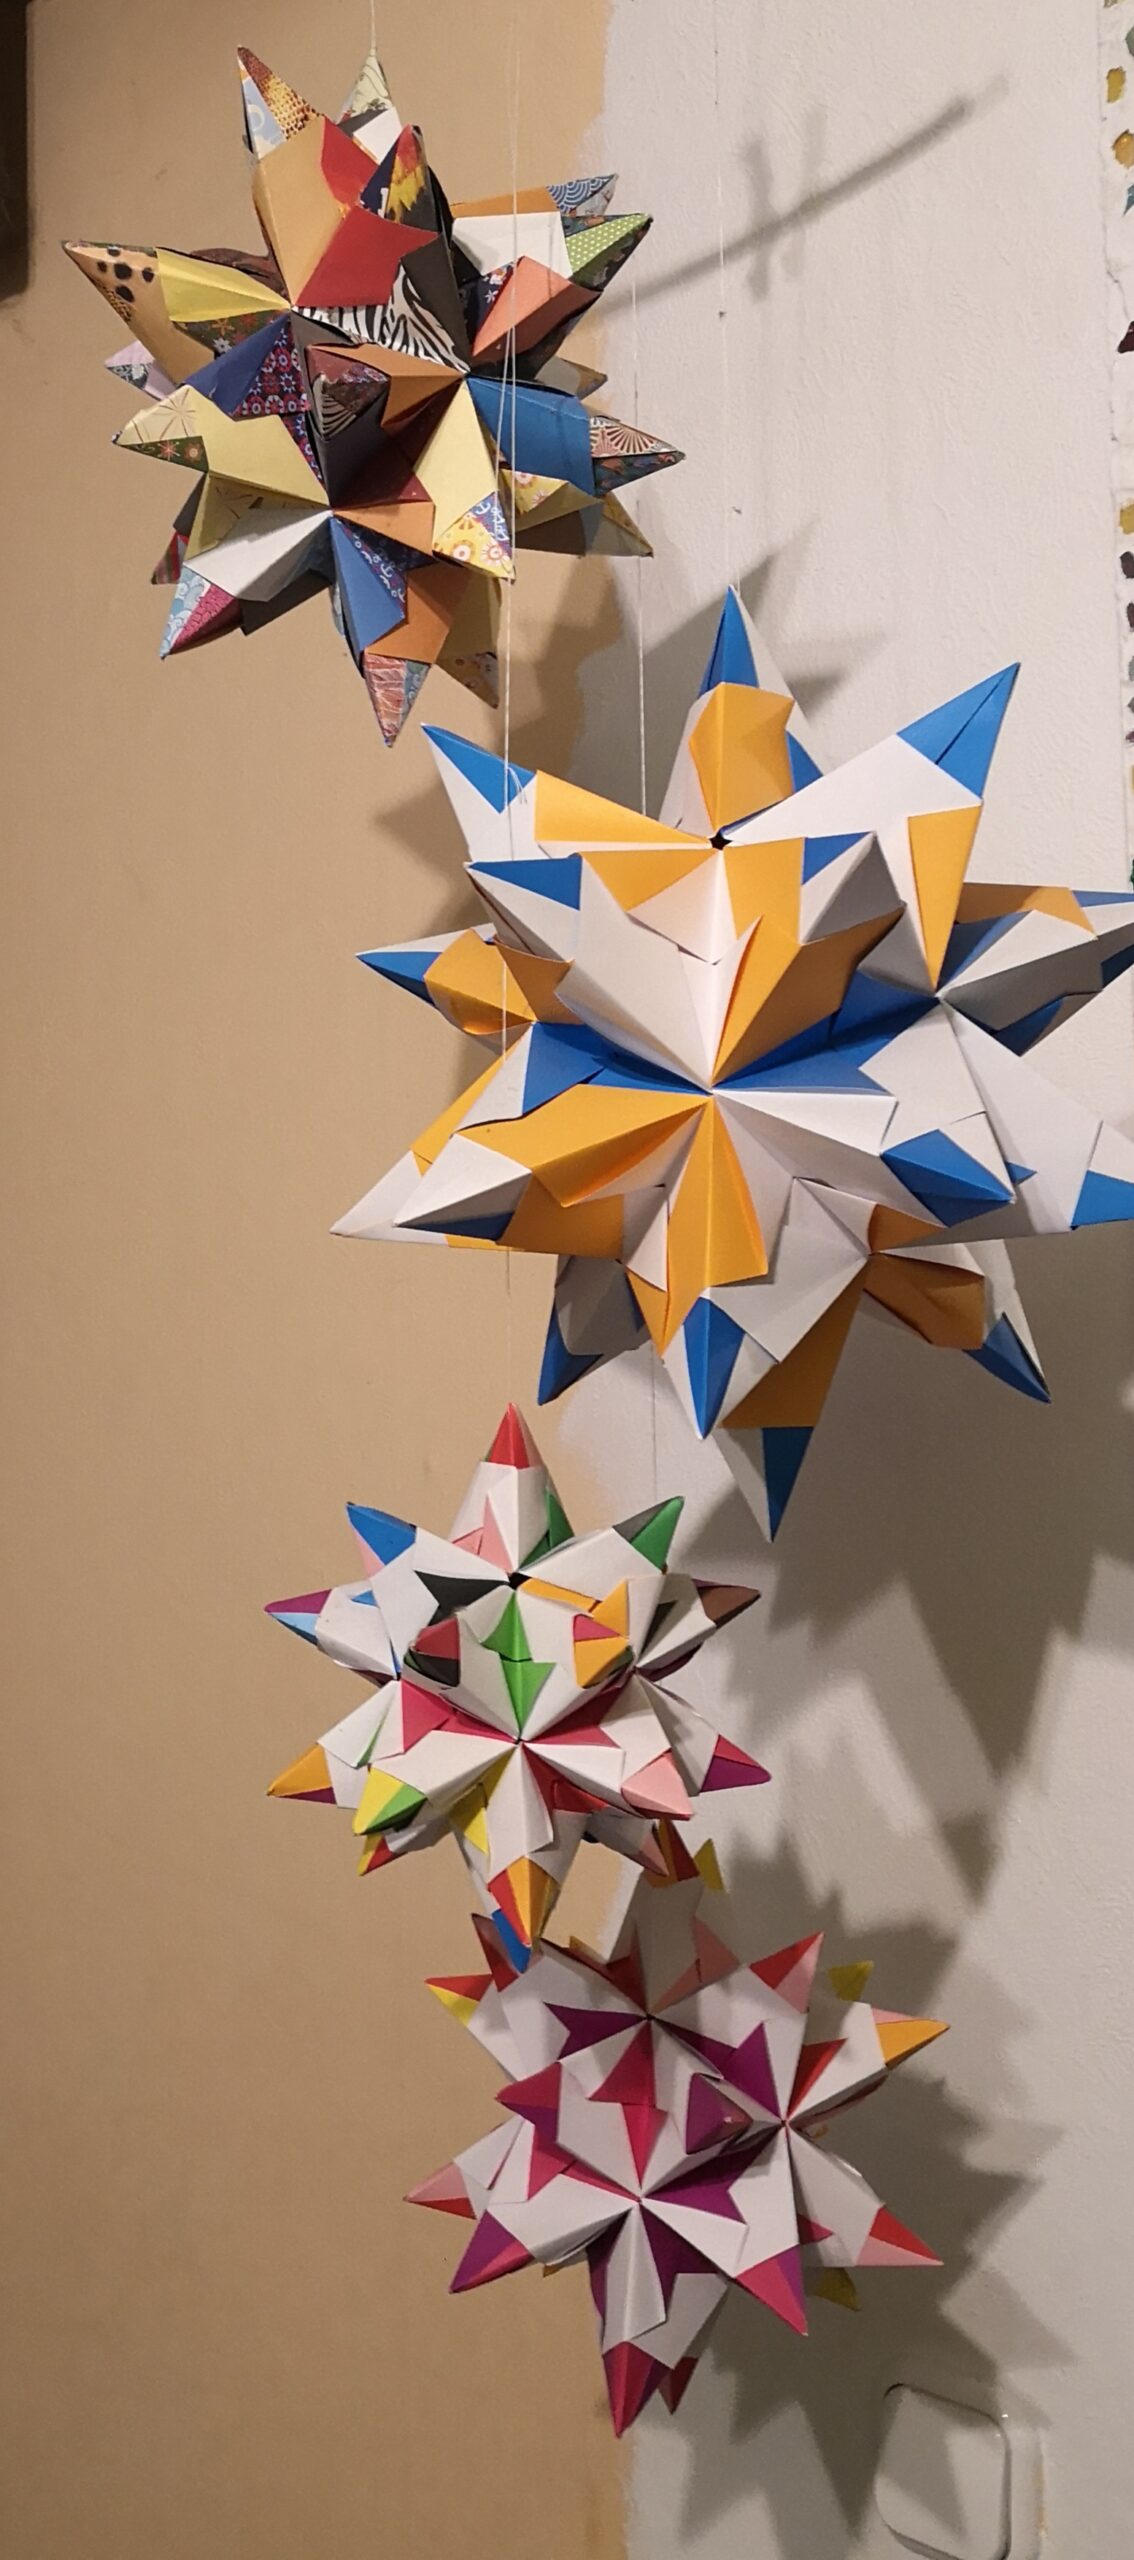 Bild verschiedengroßer Origami-Sterne an einem Mobile hängend